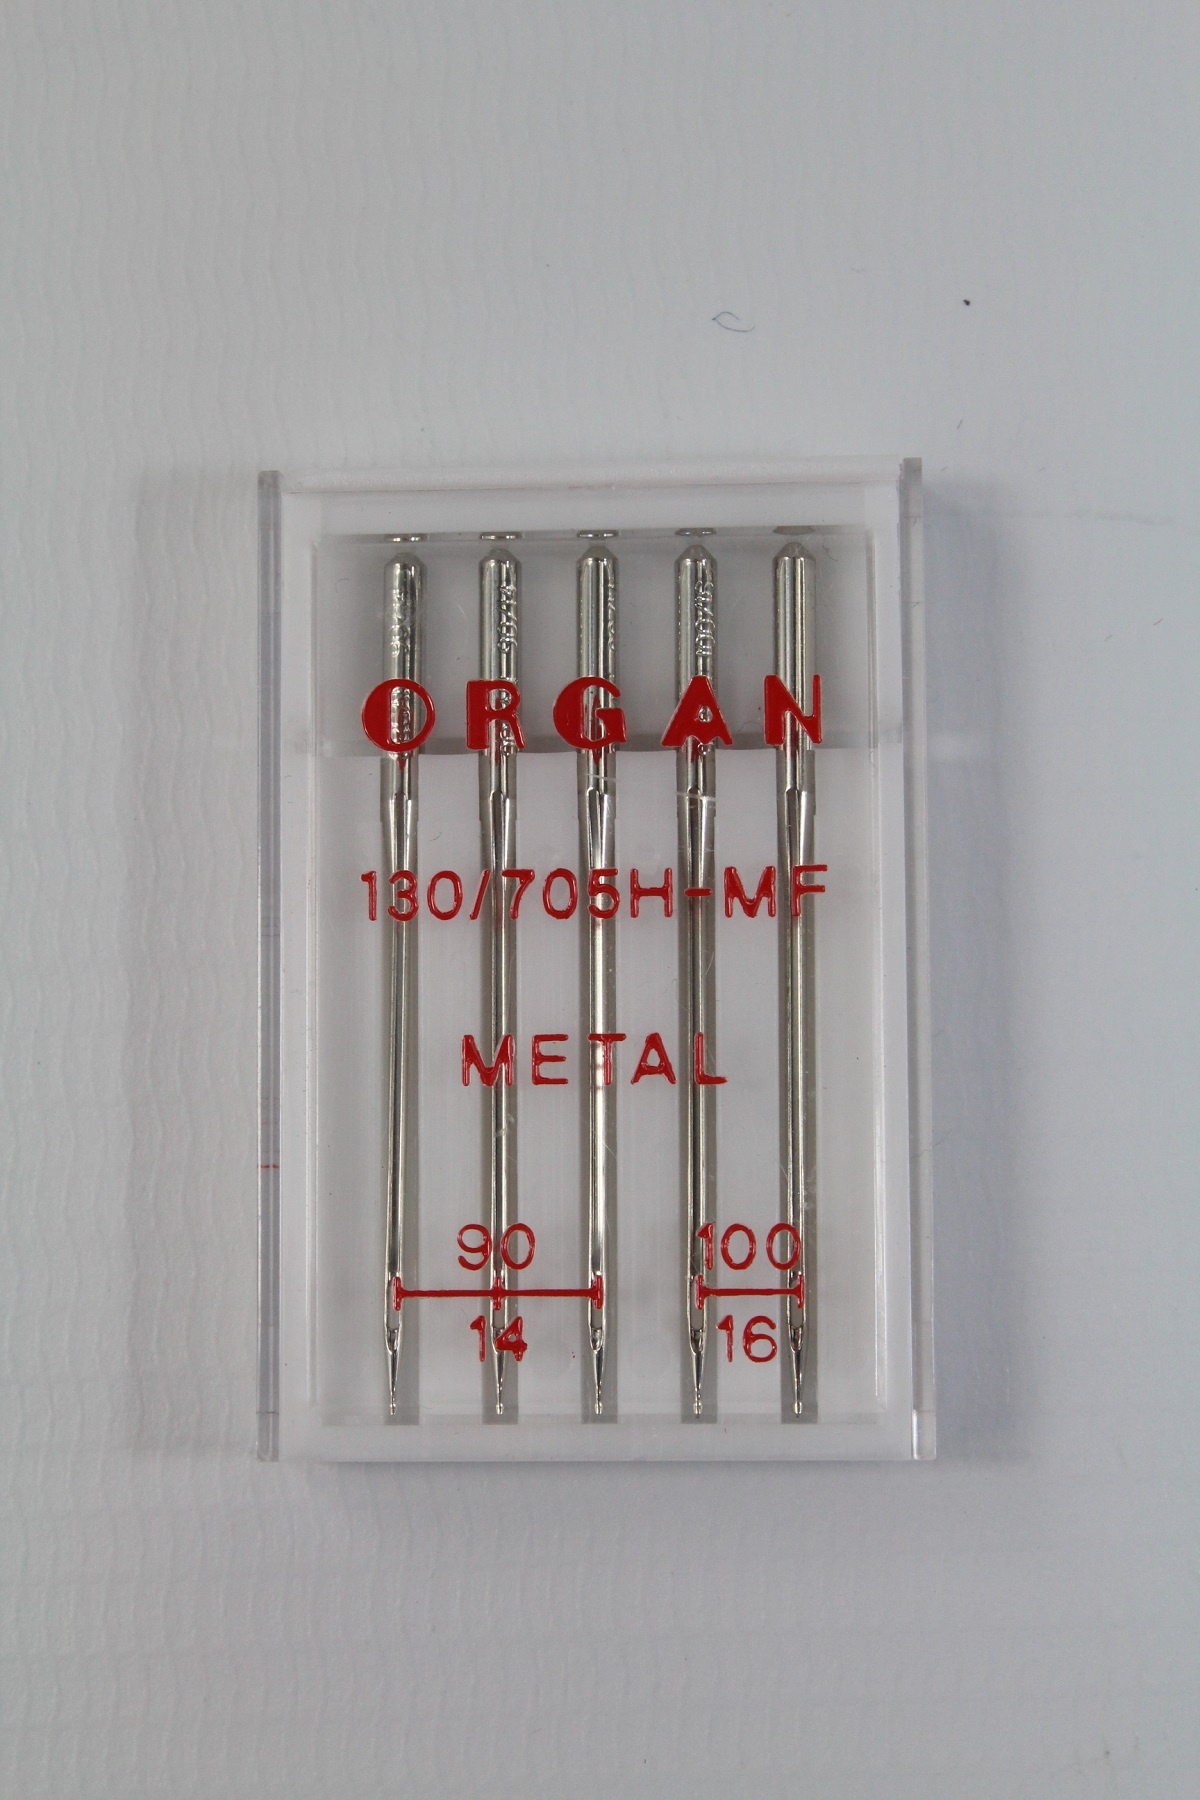 ORGAN Metal 130/705H-MF 90er / 100er im 5er pack